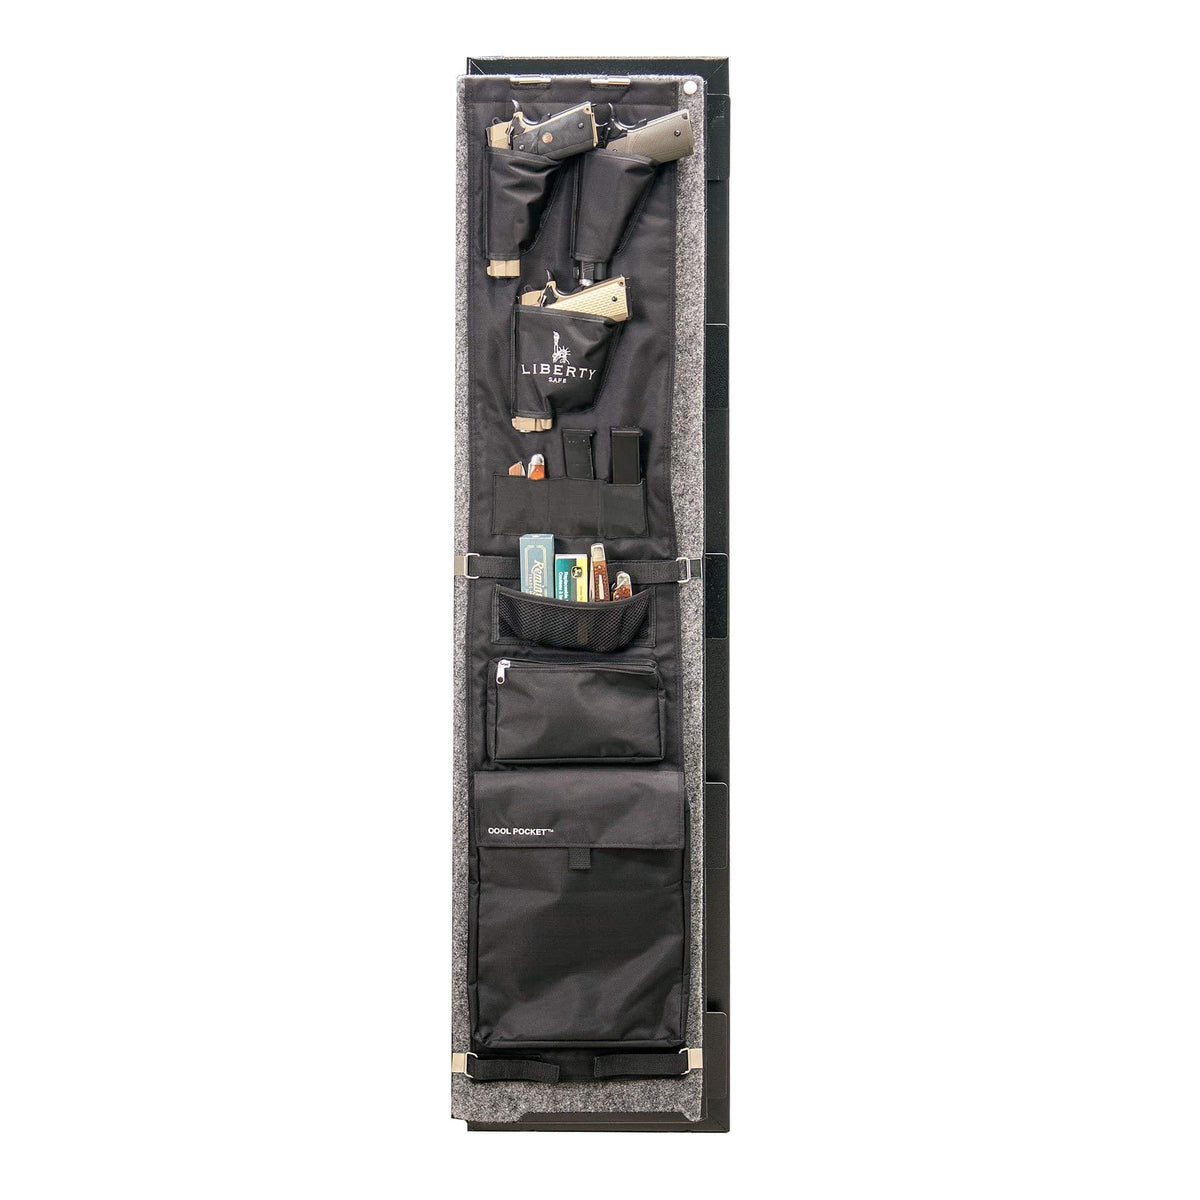 LIBERTY GUN SAFE DOOR PANEL ORGANIZER-12 size.